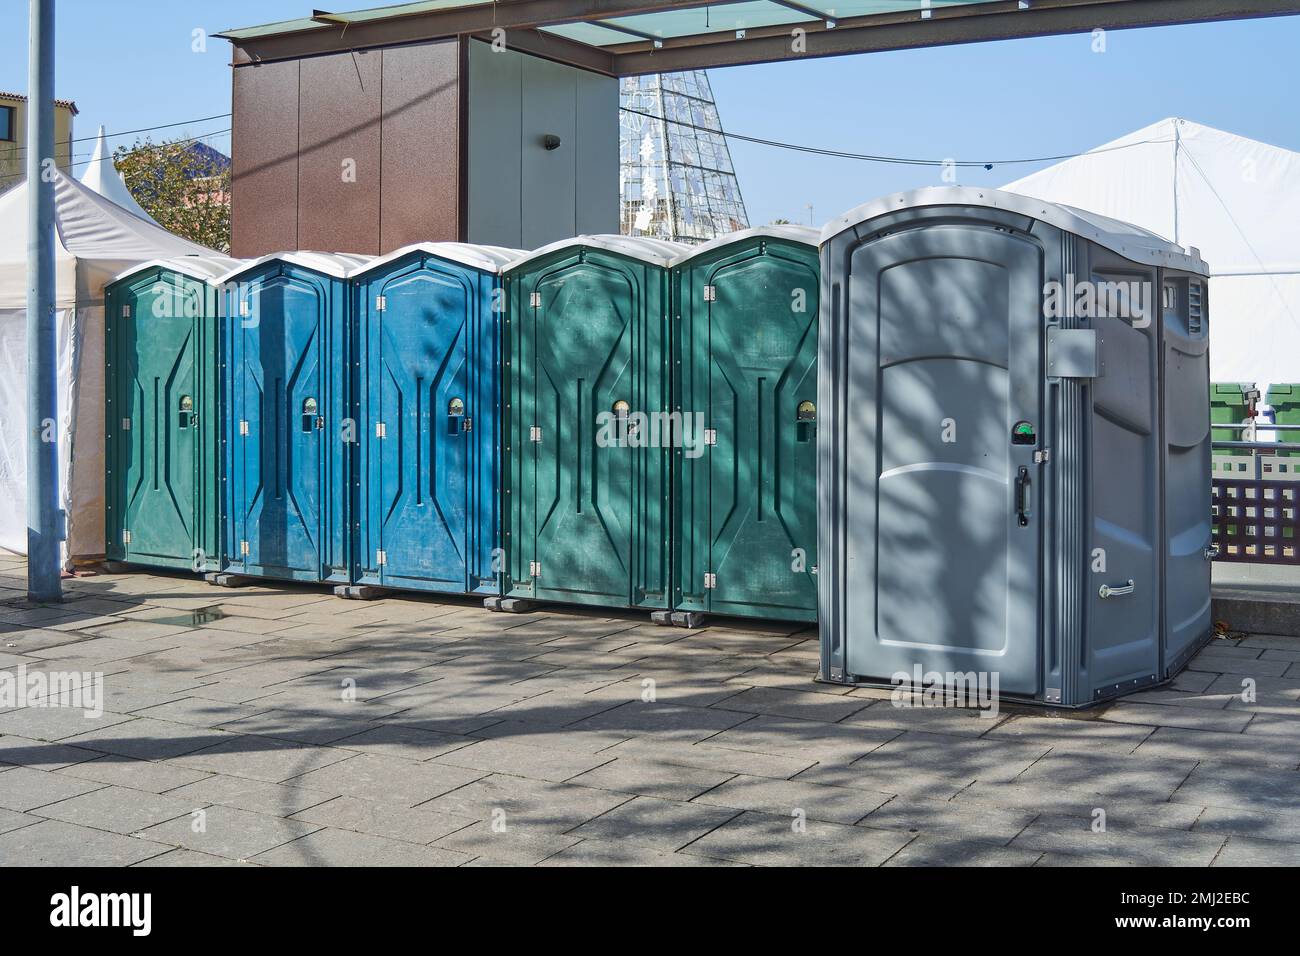 Six cabines de toilette en plastique de couleurs différentes. Toilettes publiques sur la place de la ville. Banque D'Images